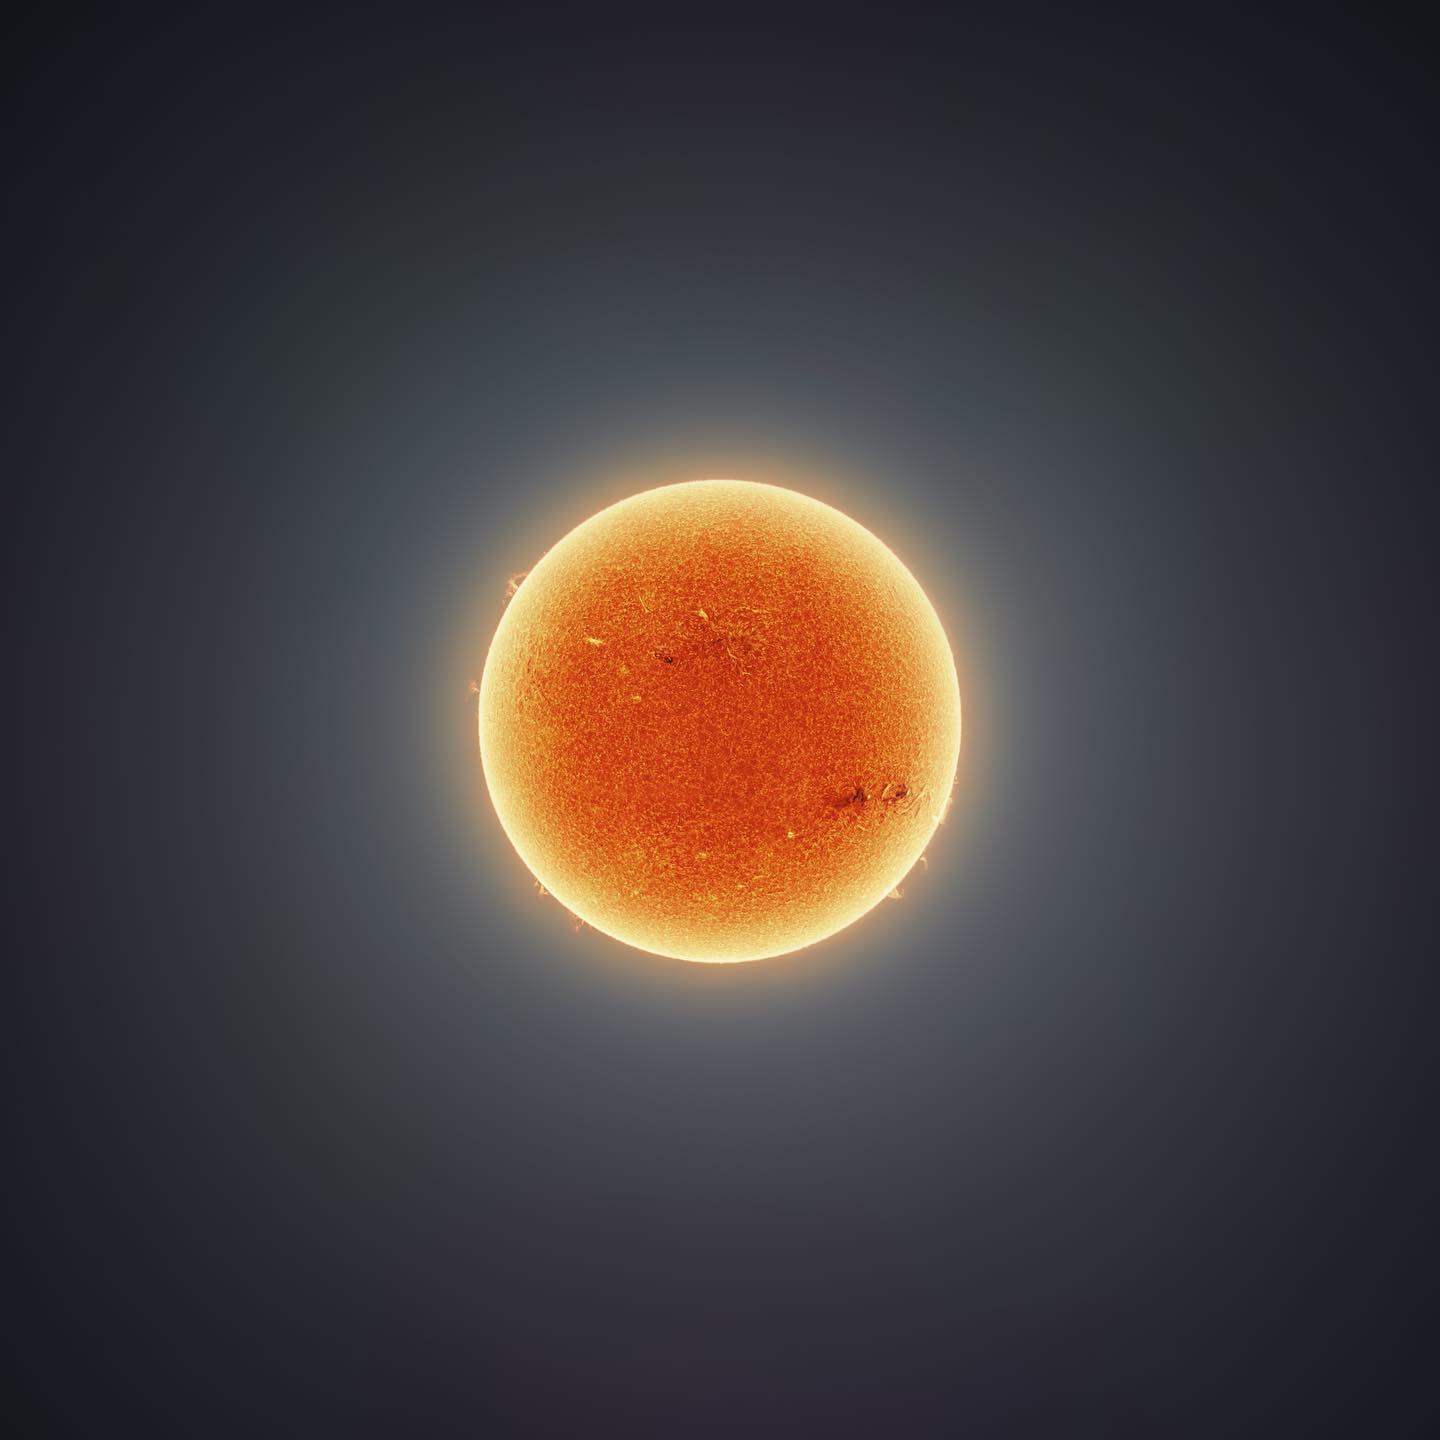 天体摄影家Andrew McCarthy发布一系列新太阳照片